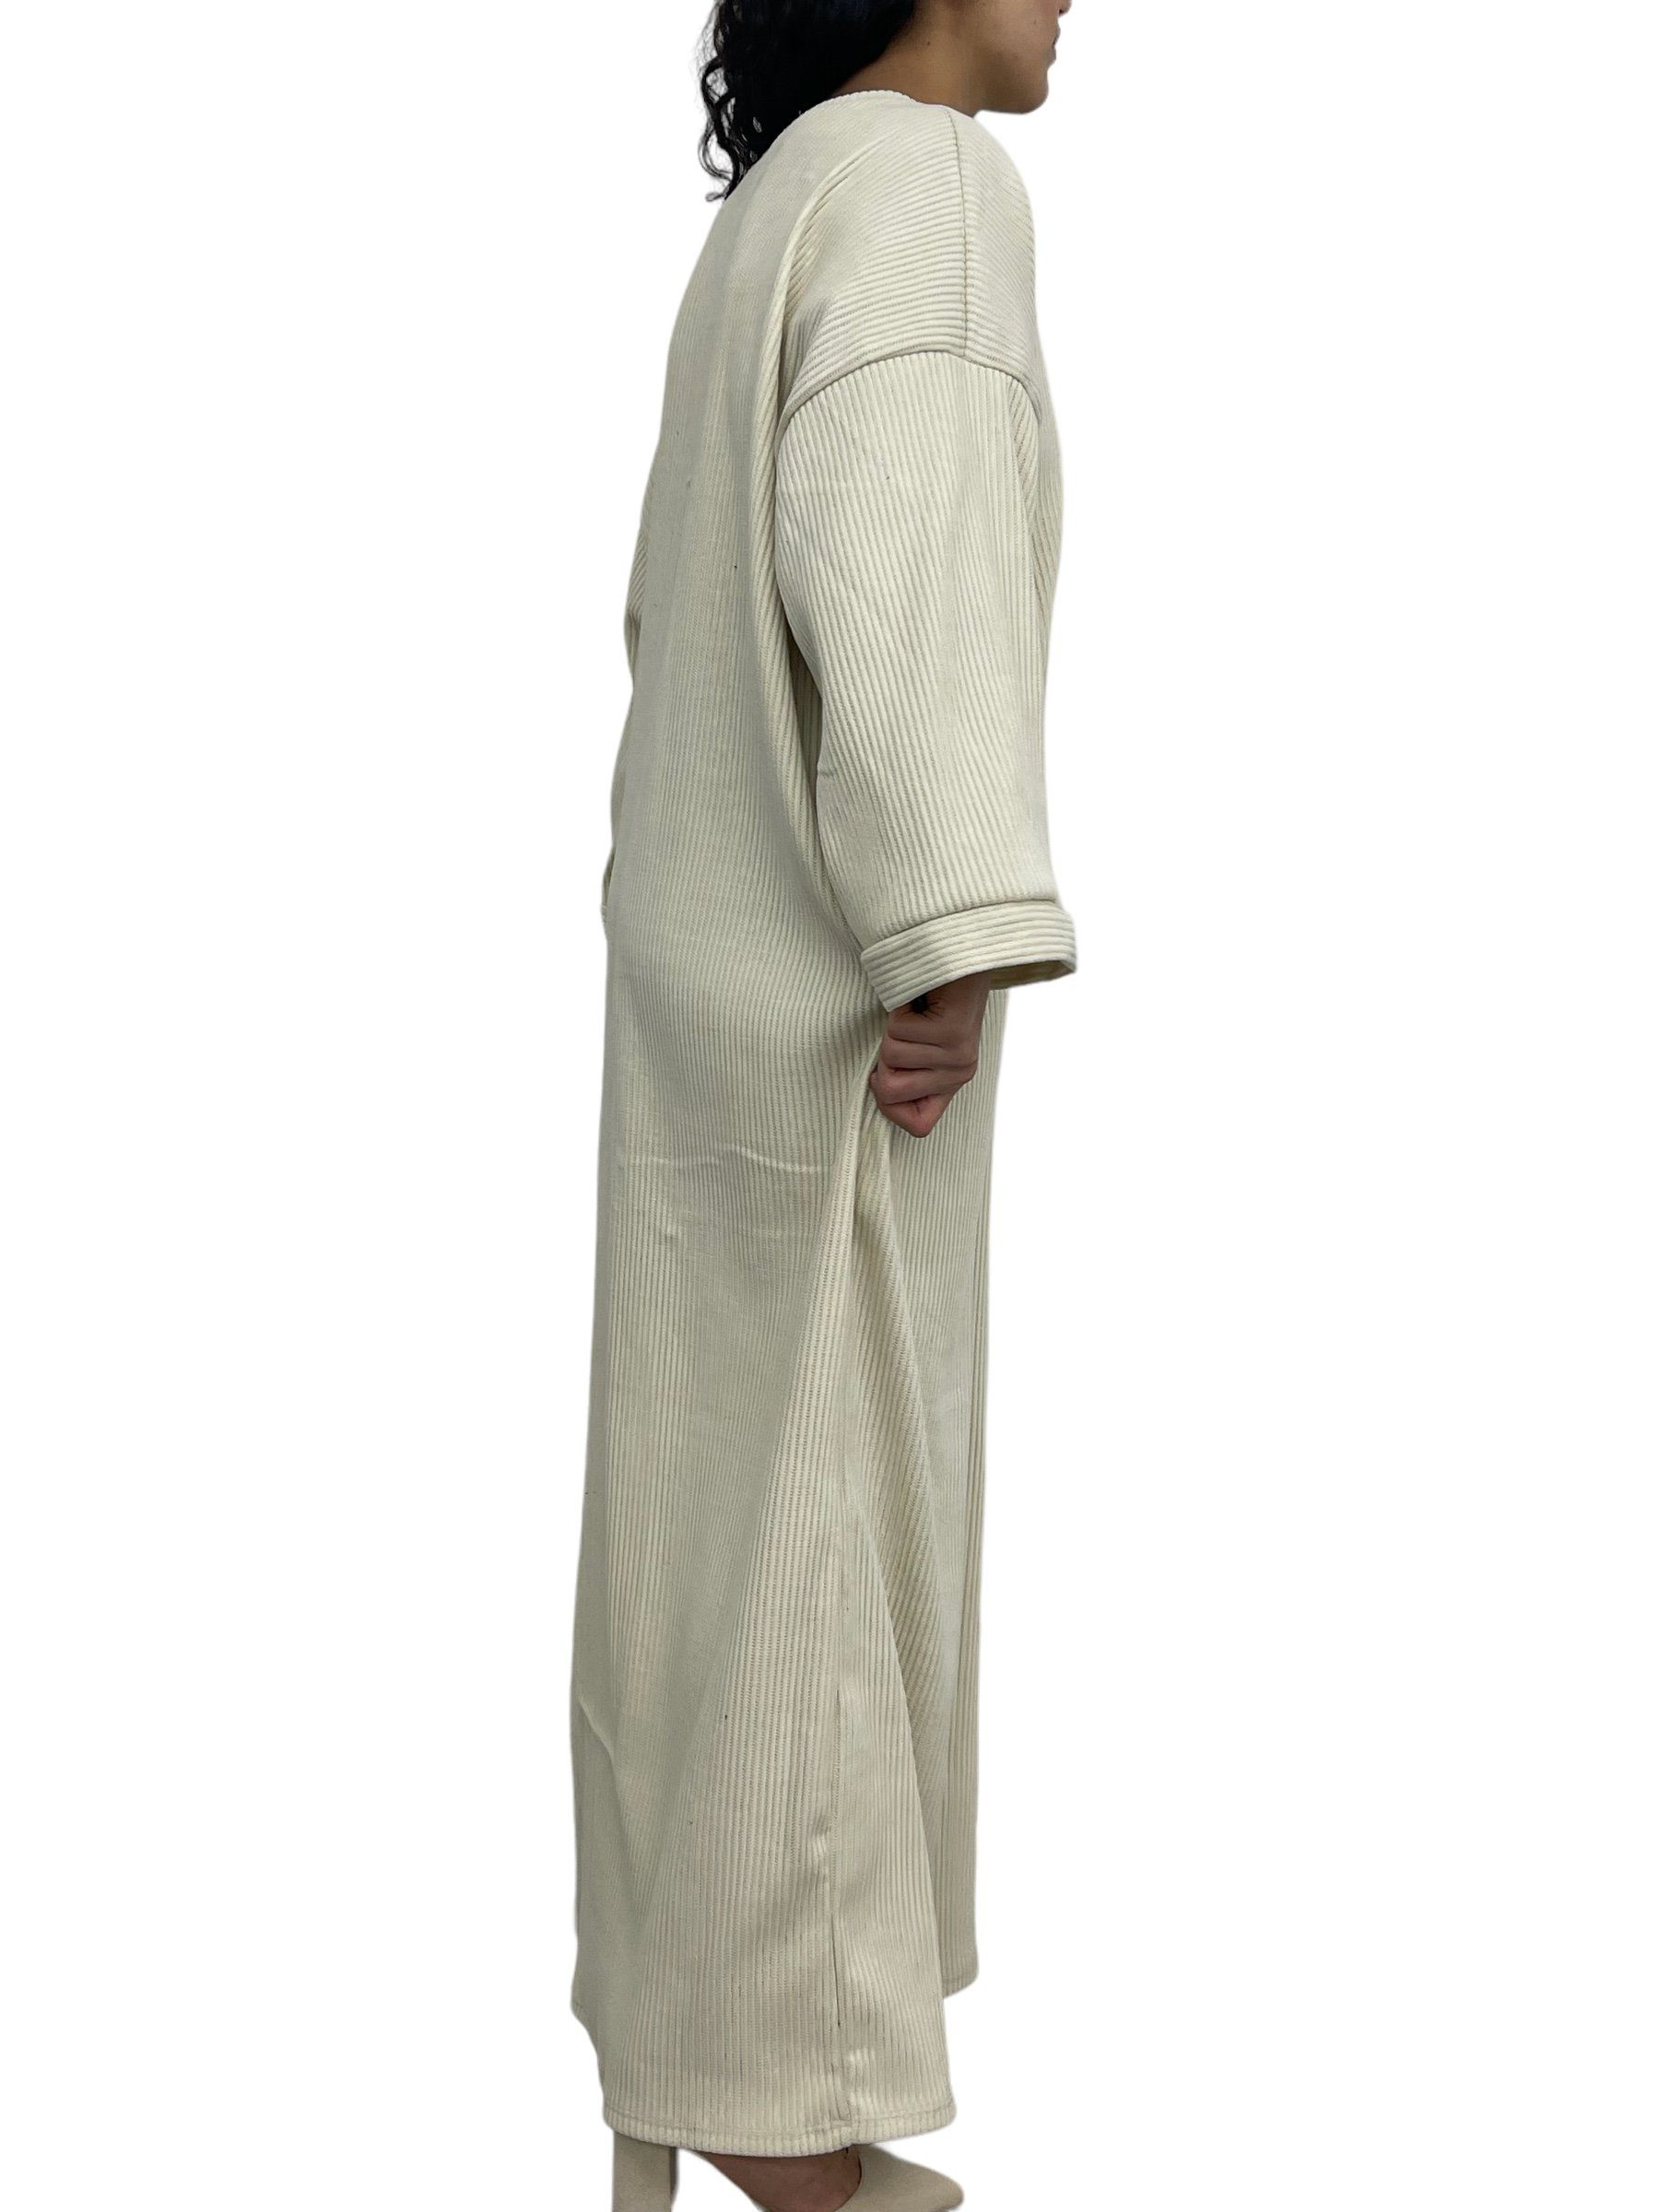 Rundhals Cordkleid HELLO in Cordkleid Lang MISS mit Style, Unifarbe Beige Abaya